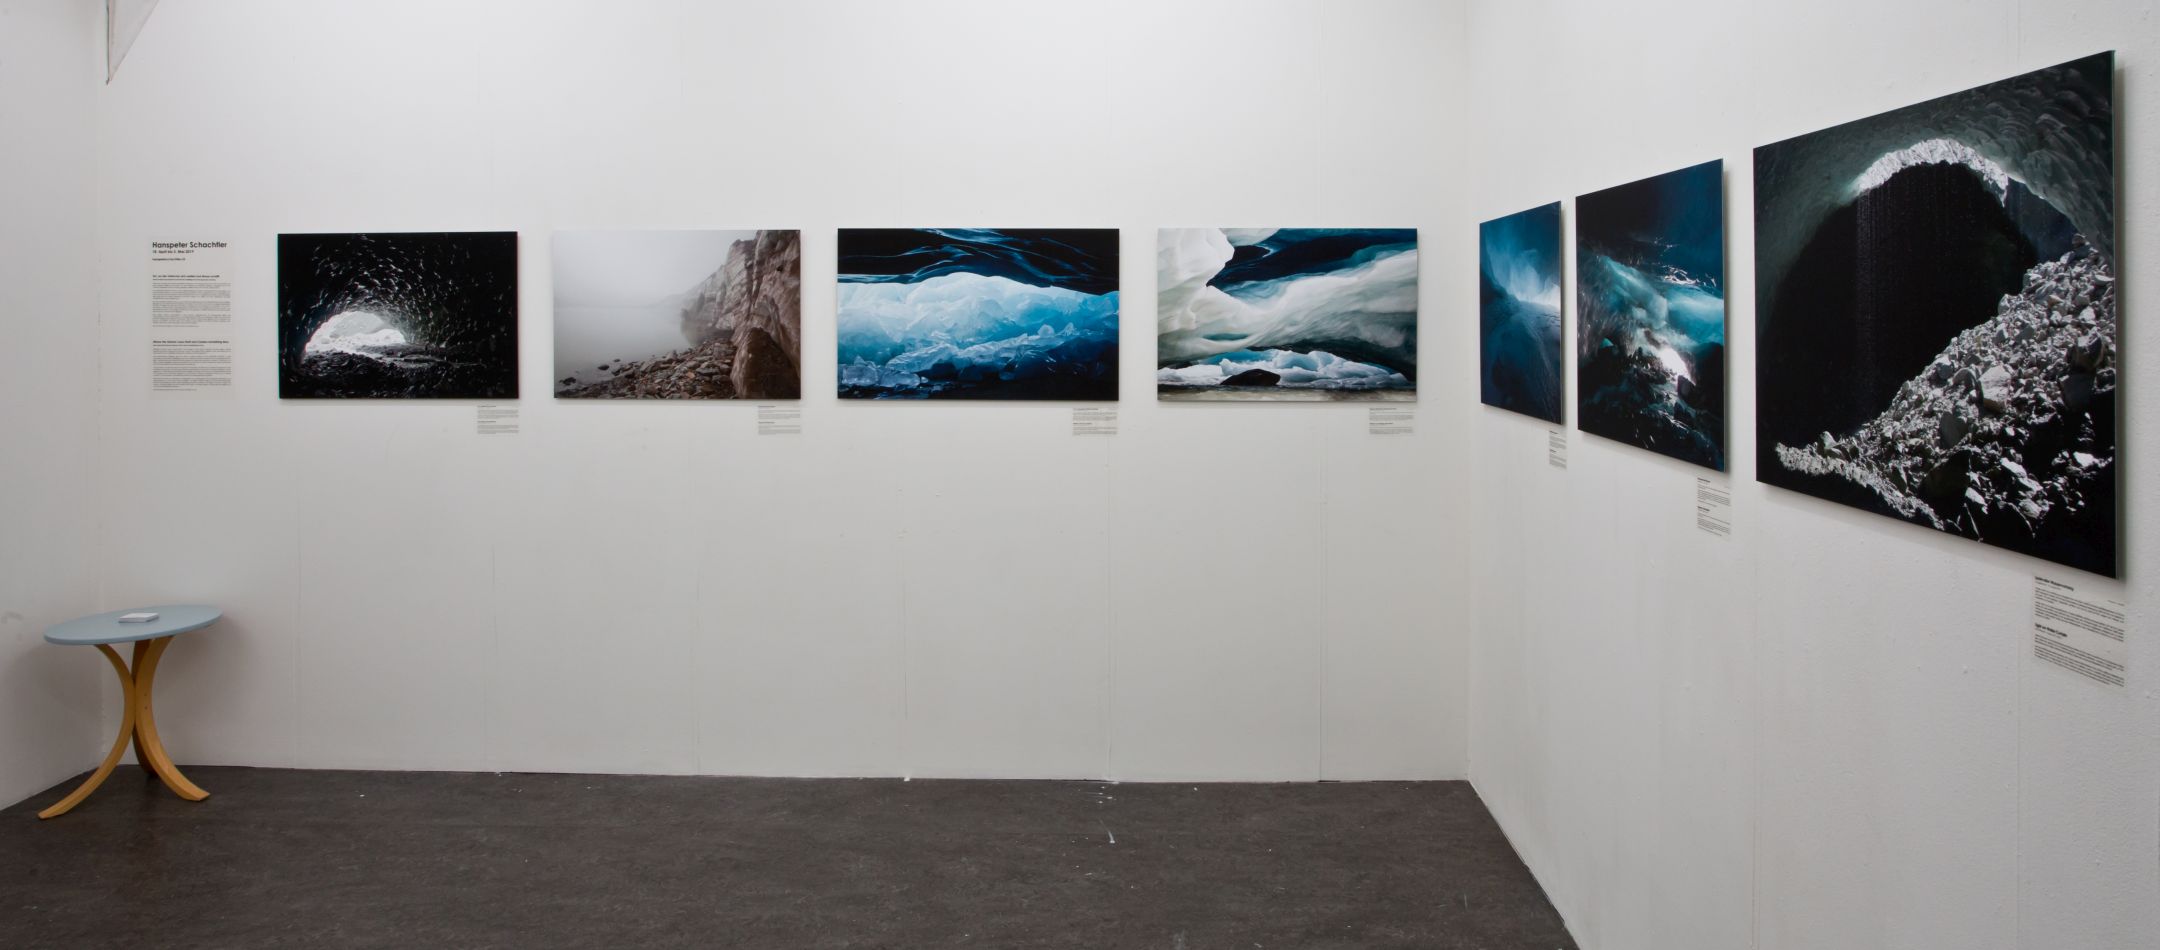 Ausstellung von Hanspeter Schachtler in der Photobastei zwischen dem 18. April und 5. Mai 2019. Es werden sieben Bilder aus der Welt der Gletscher gezeigt.